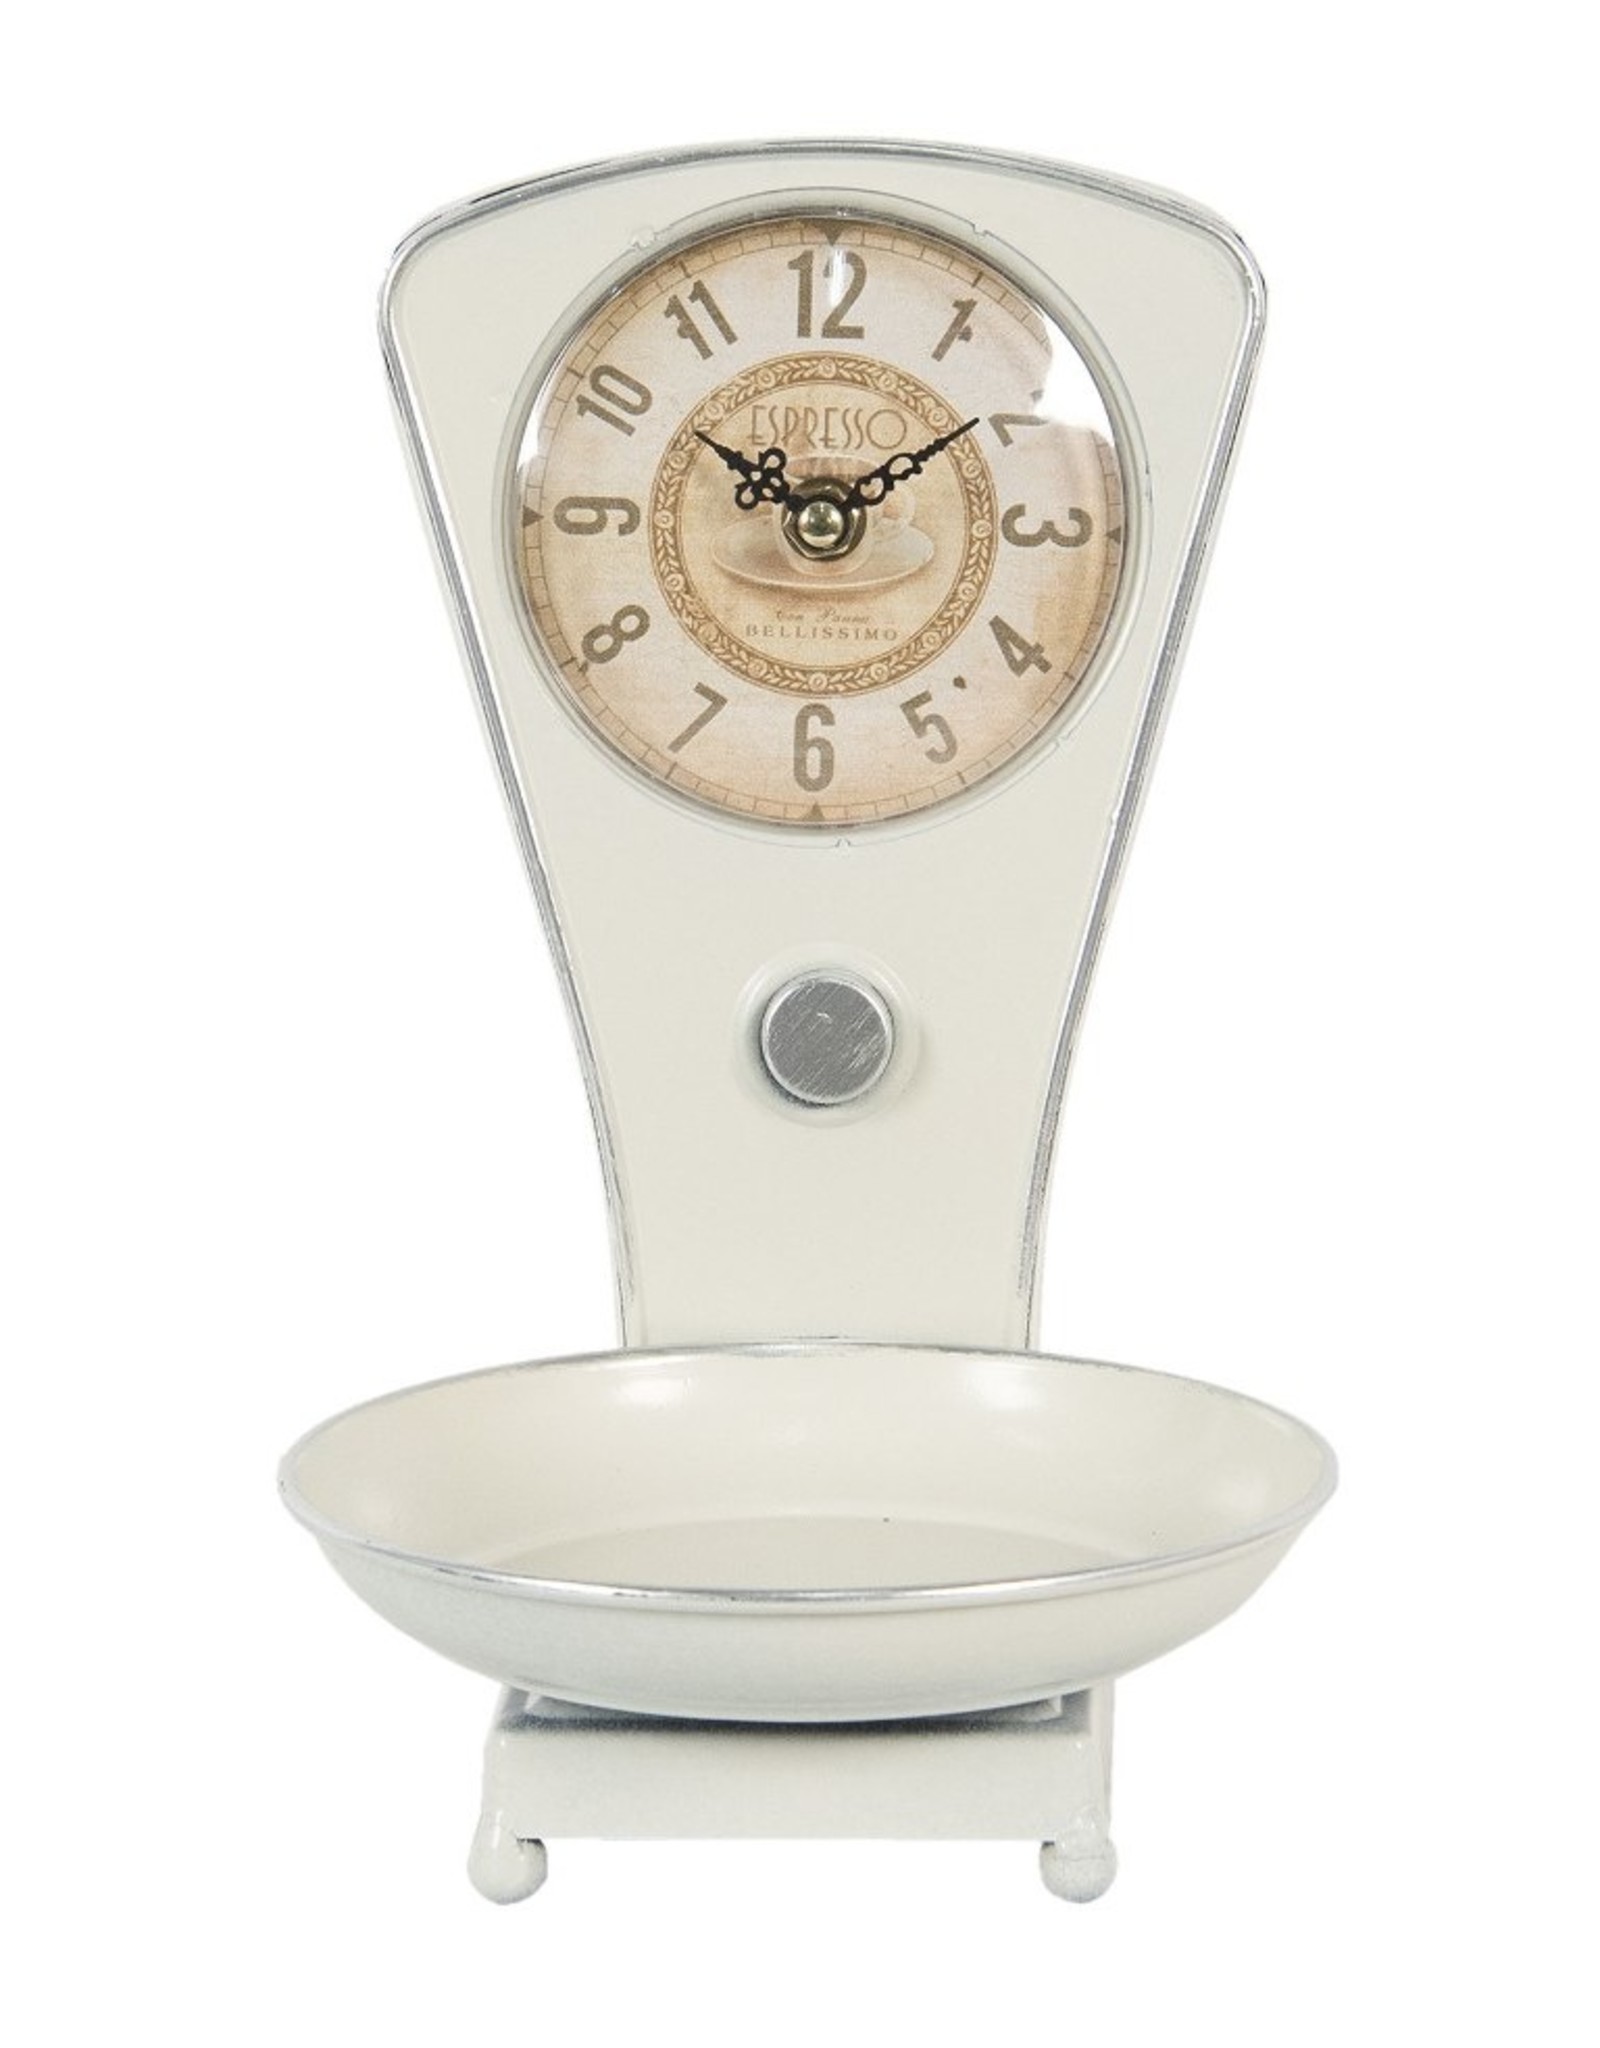 Trukado Miscellaneous - Table clock Vintage Scale Espresso